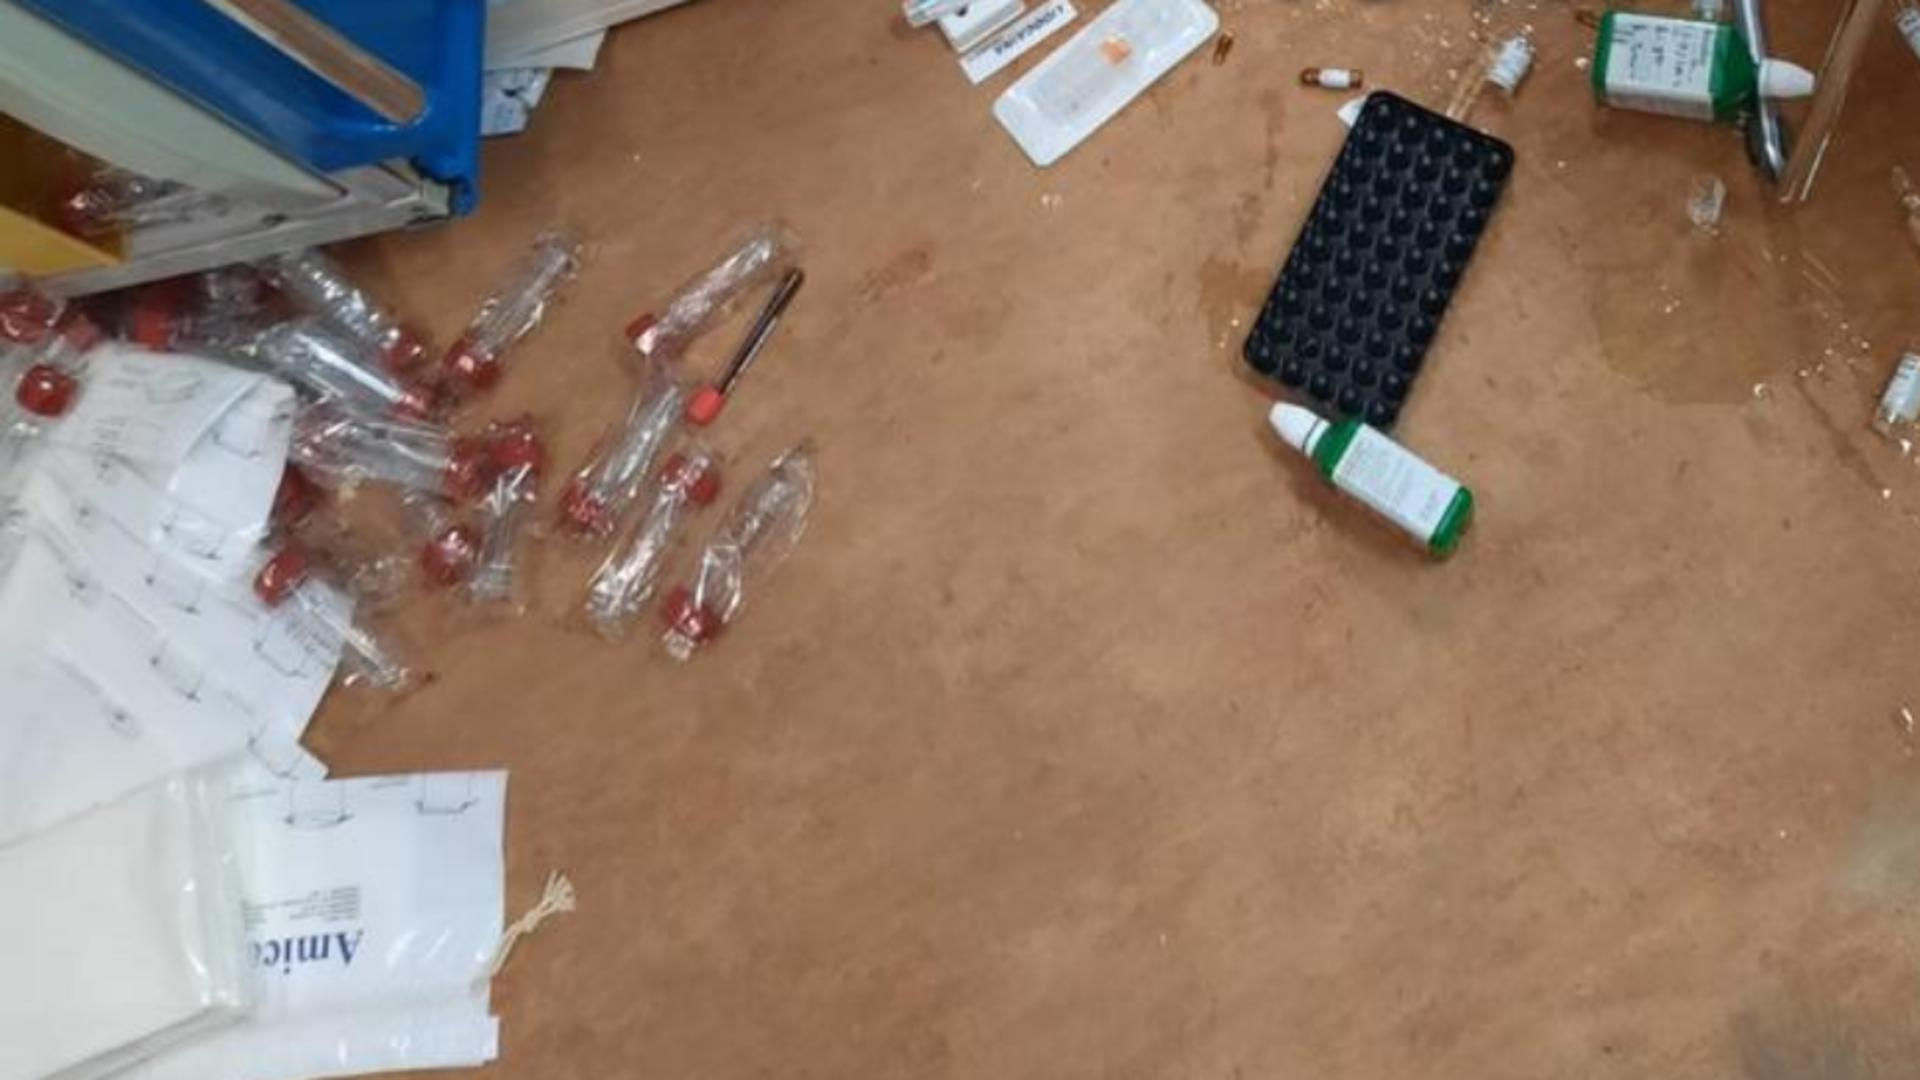 Clipe de groază la Spitalul Județean din Vaslui: un pacient care se automutilase a distrus mobilierul și aparatura medicală